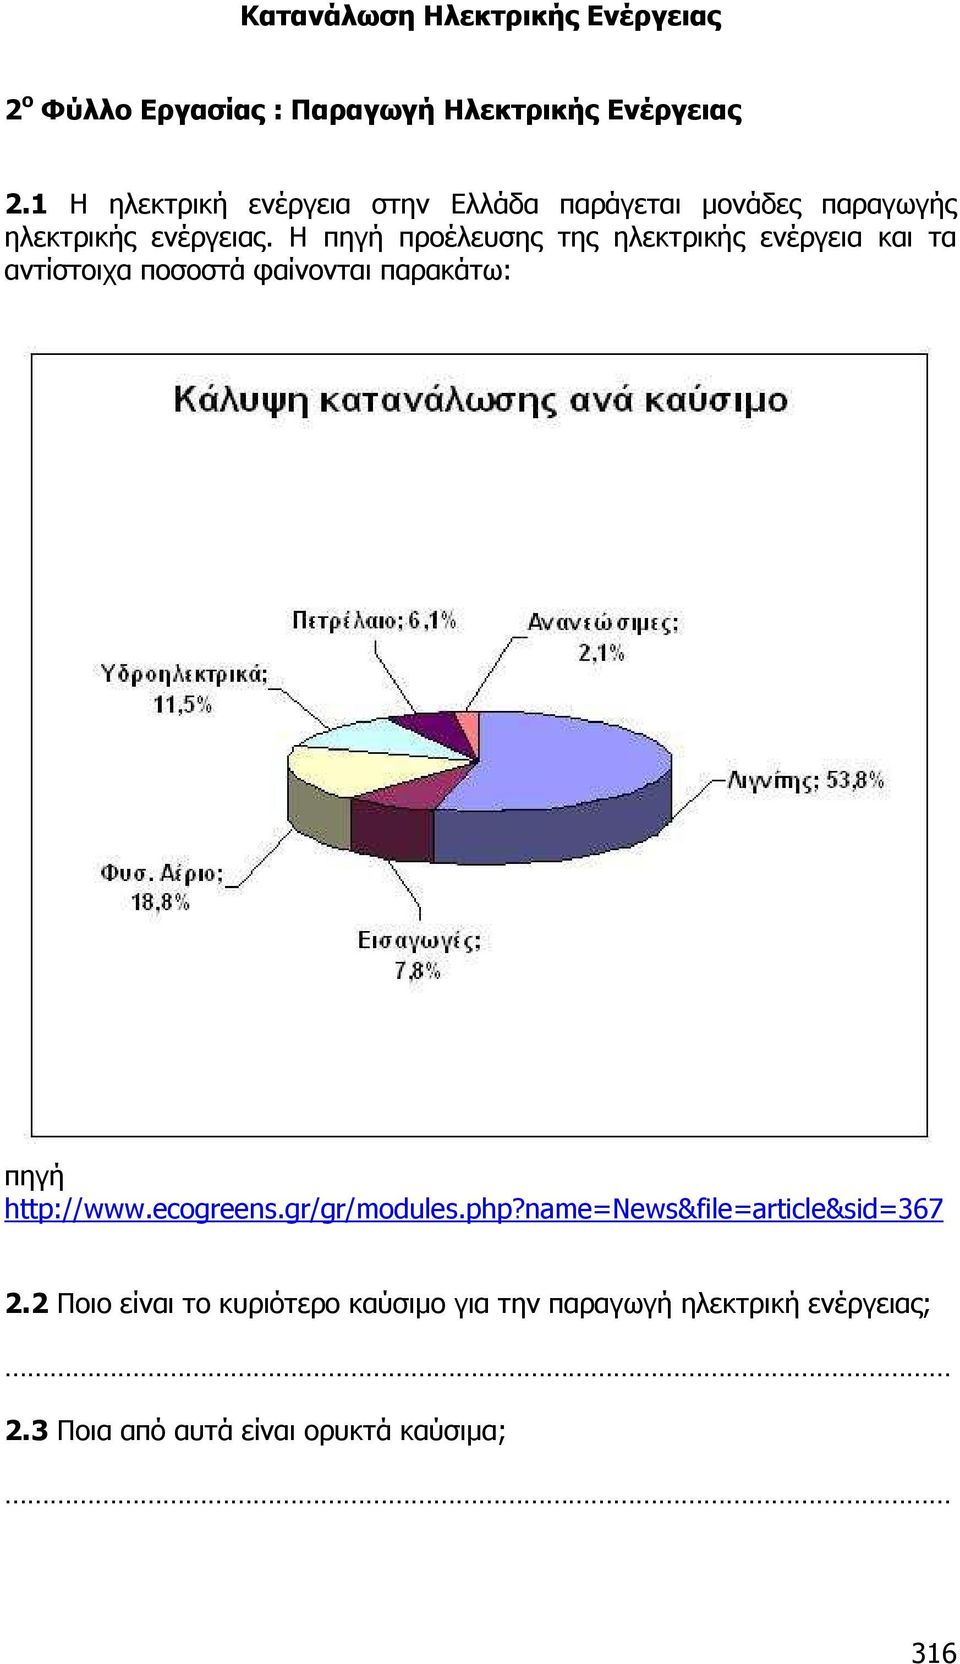 Η πηγή προέλευσης της ηλεκτρικής ενέργεια και τα αντίστοιχα ποσοστά φαίνονται παρακάτω: πηγή http://www.